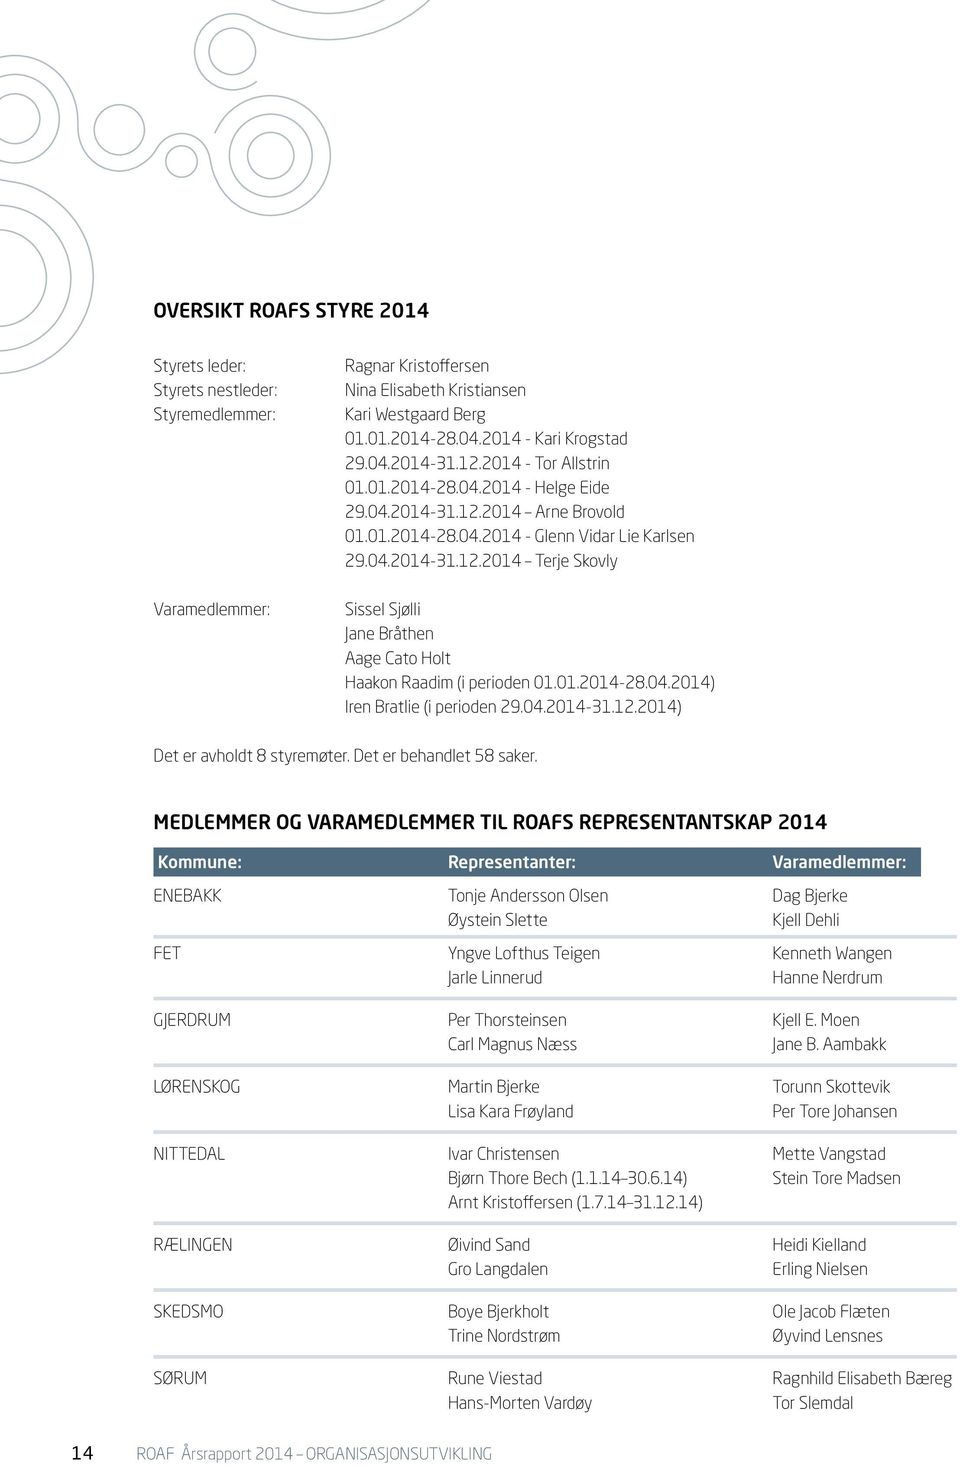 01.2014-28.04.2014) Iren Bratlie (i perioden 29.04.2014-31.12.2014) Det er avholdt 8 styremøter. Det er behandlet 58 saker.